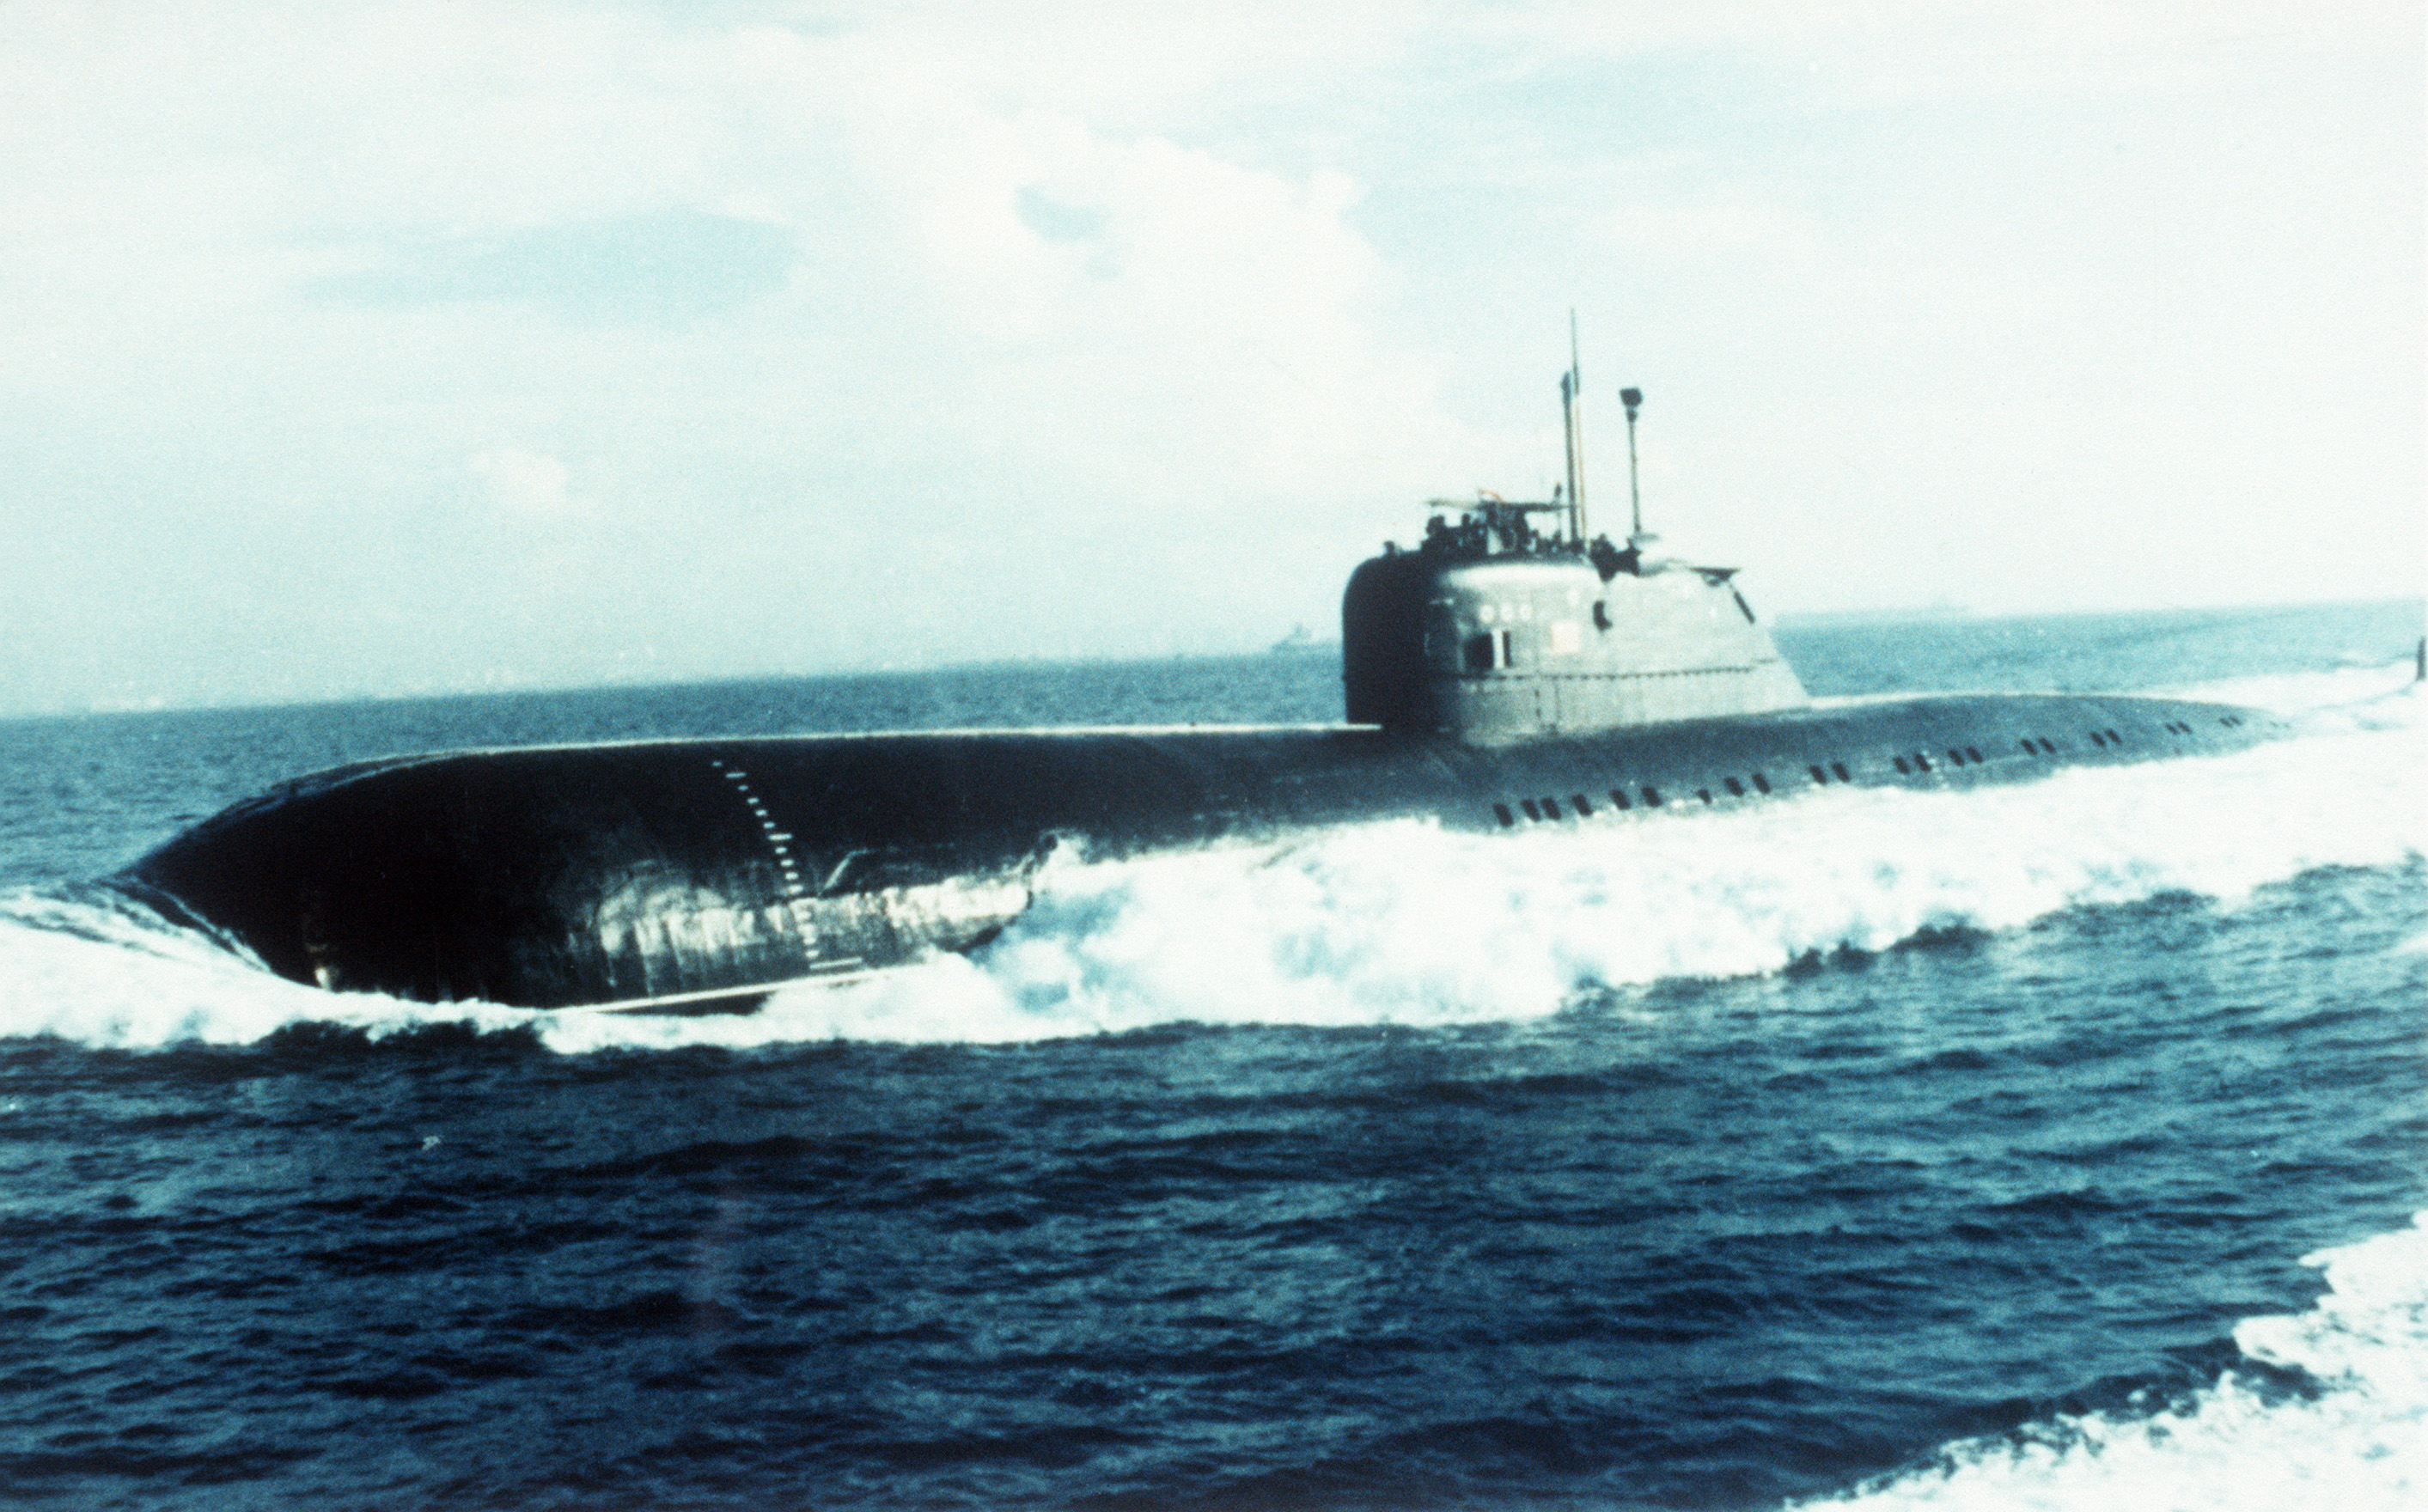 Пл чо шп онаж. Подводная лодка Скат 670. Подводные лодки проекта 670 «Скат». К-429 атомная подводная лодка. Подводная лодка 670м "Беркут".